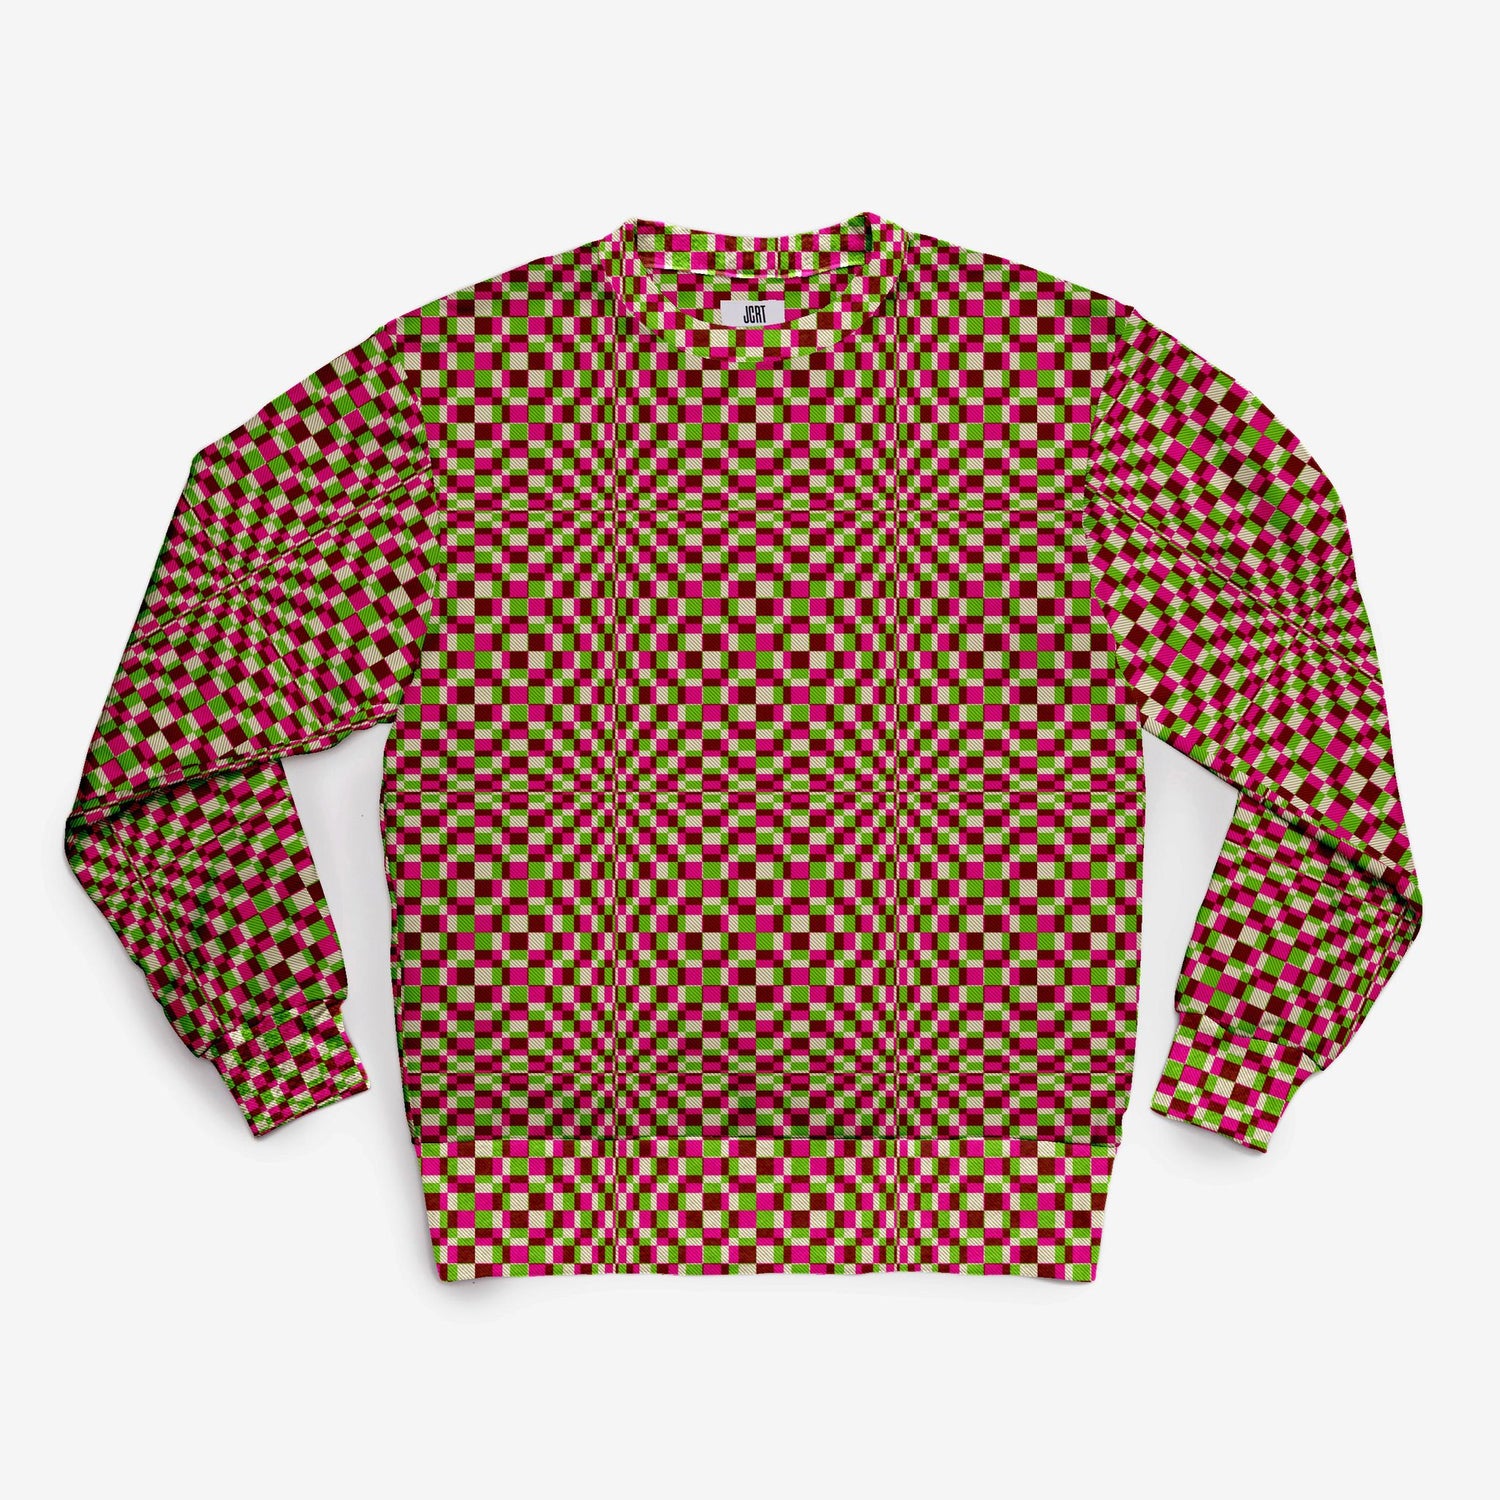 The Screaming Squares Plaid Sweatshirt